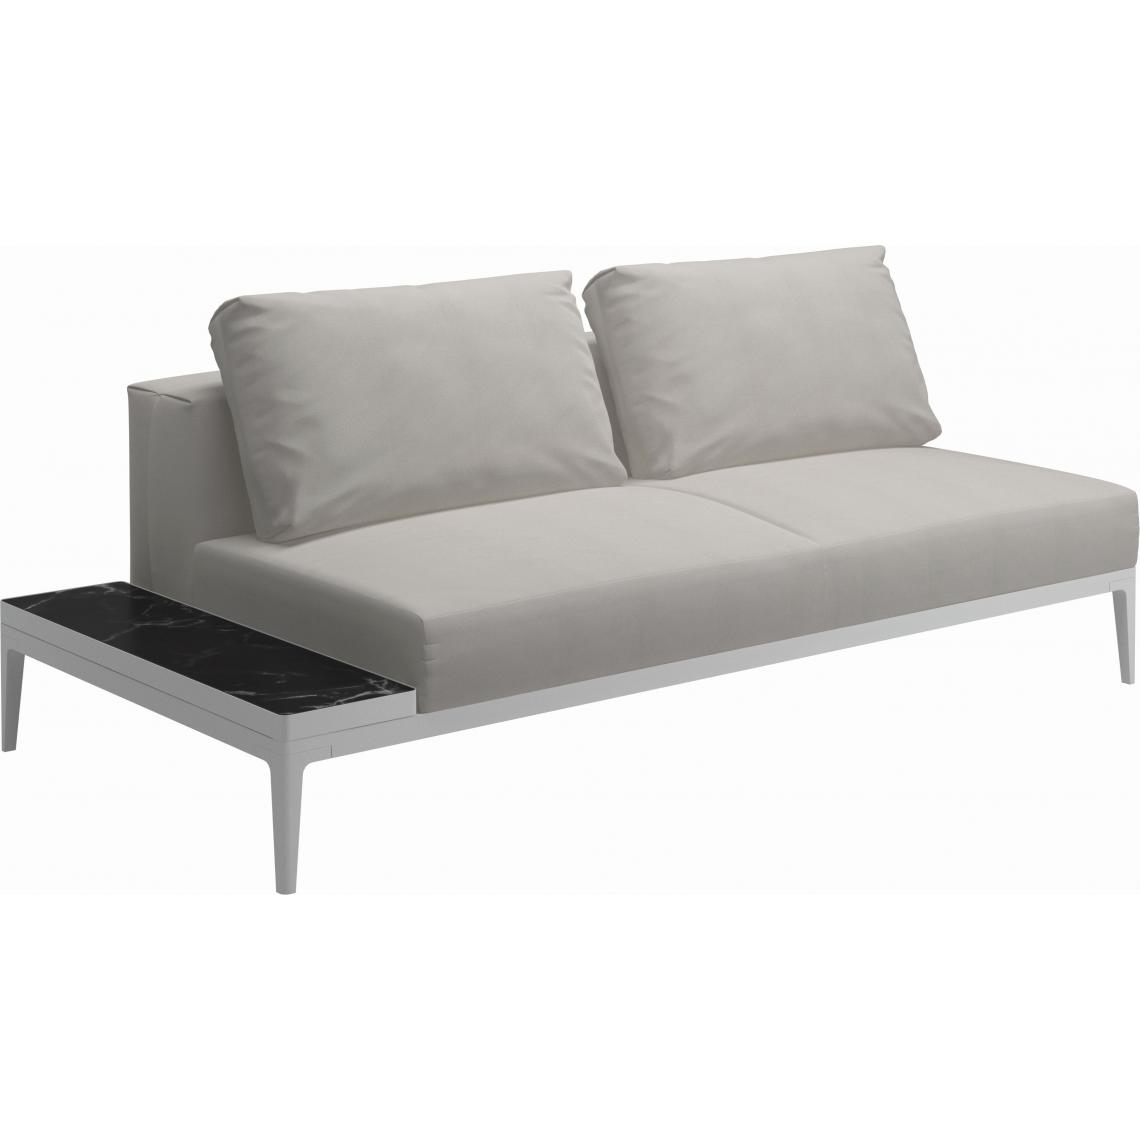 Gloster - Canapé et table Grid - GlosterGridNeroCeramic - blanc - Blend Linen - Ensembles canapés et fauteuils